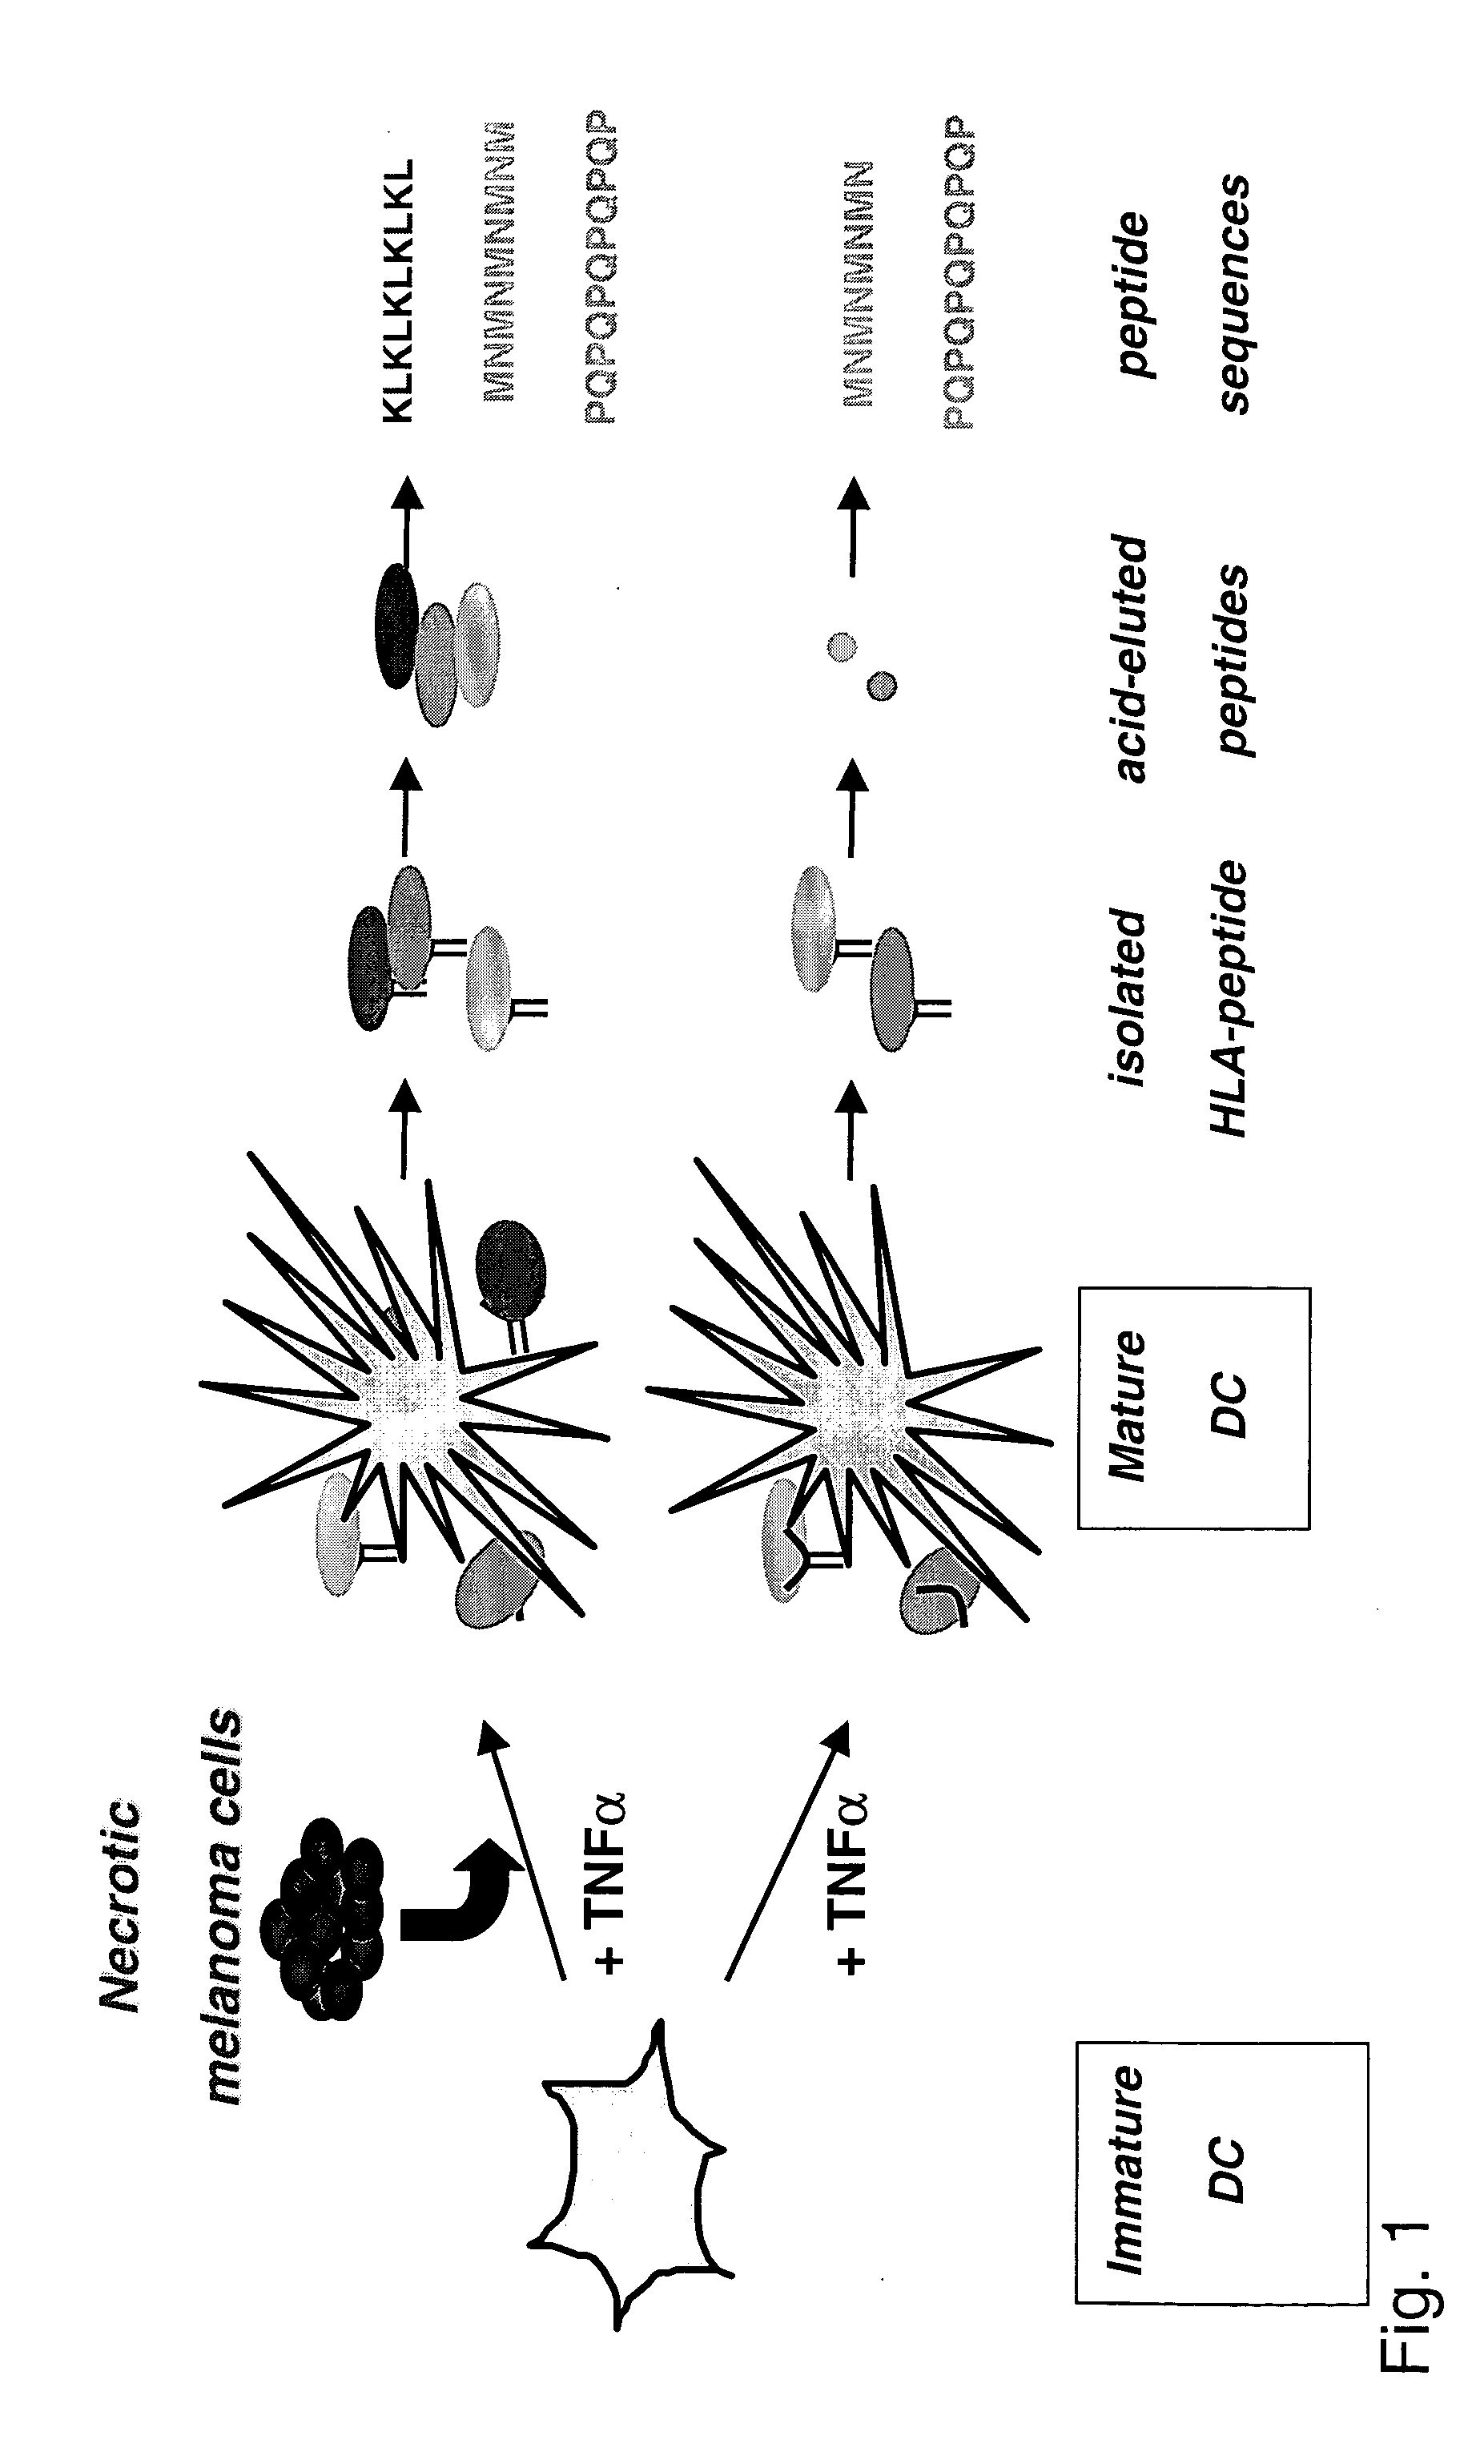 Novel MHC II associated peptides